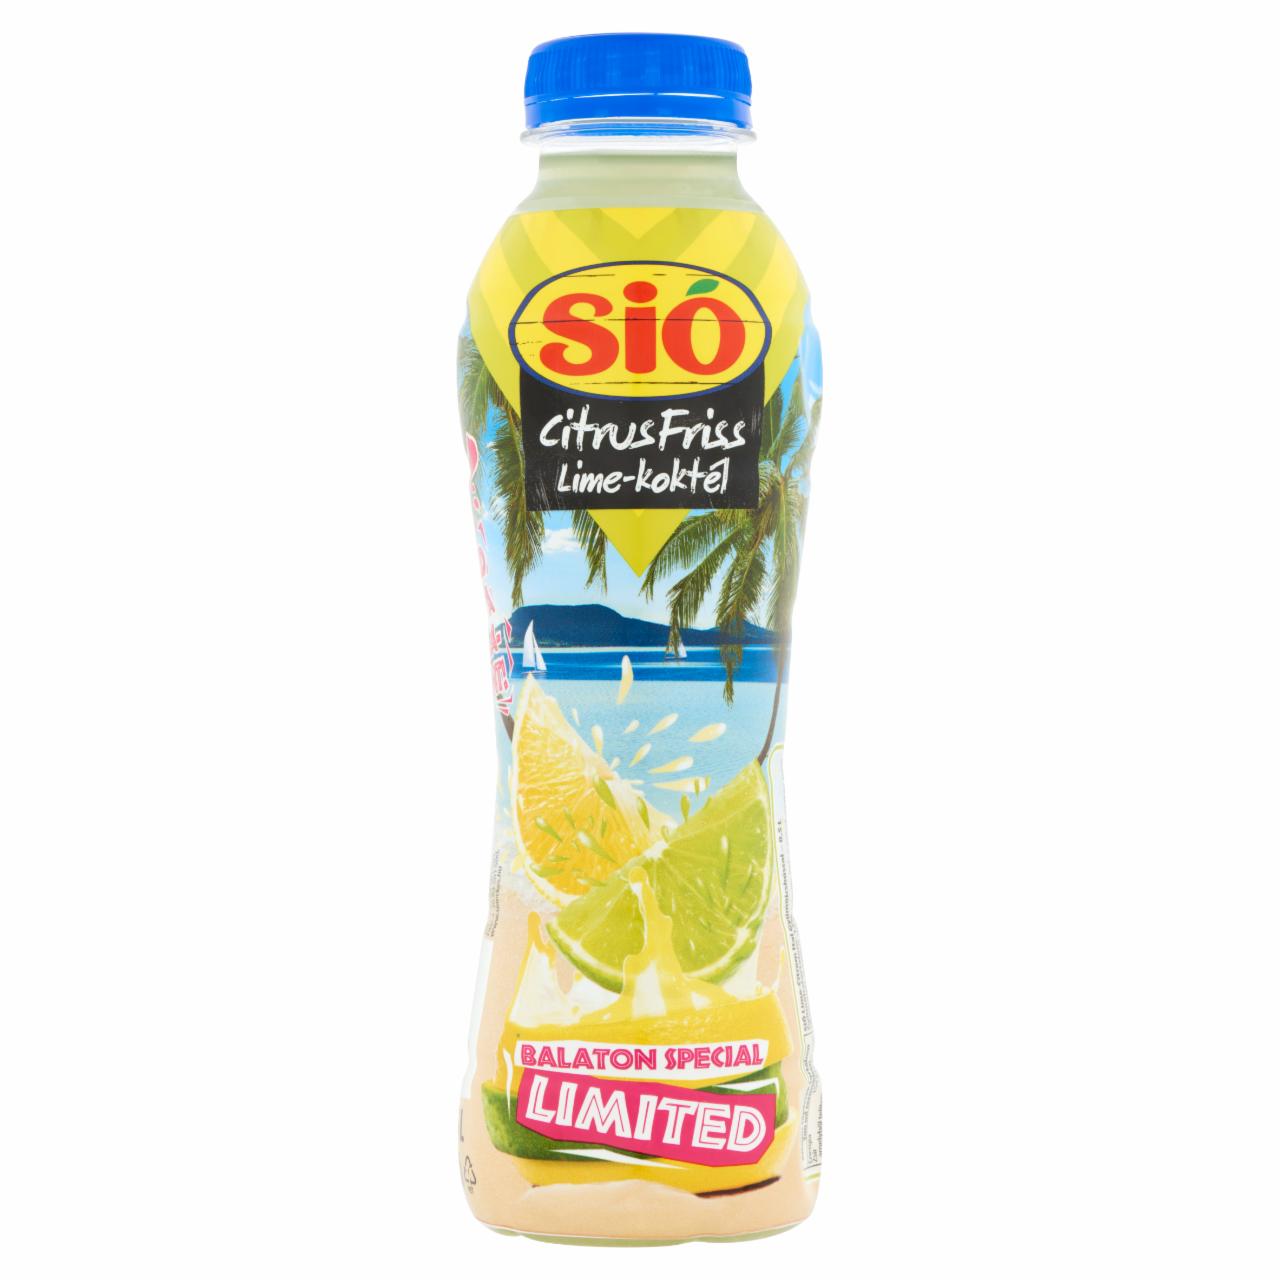 Képek - Sió Citrus Friss lime-koktél ital gyümölcshússal 0,5 l